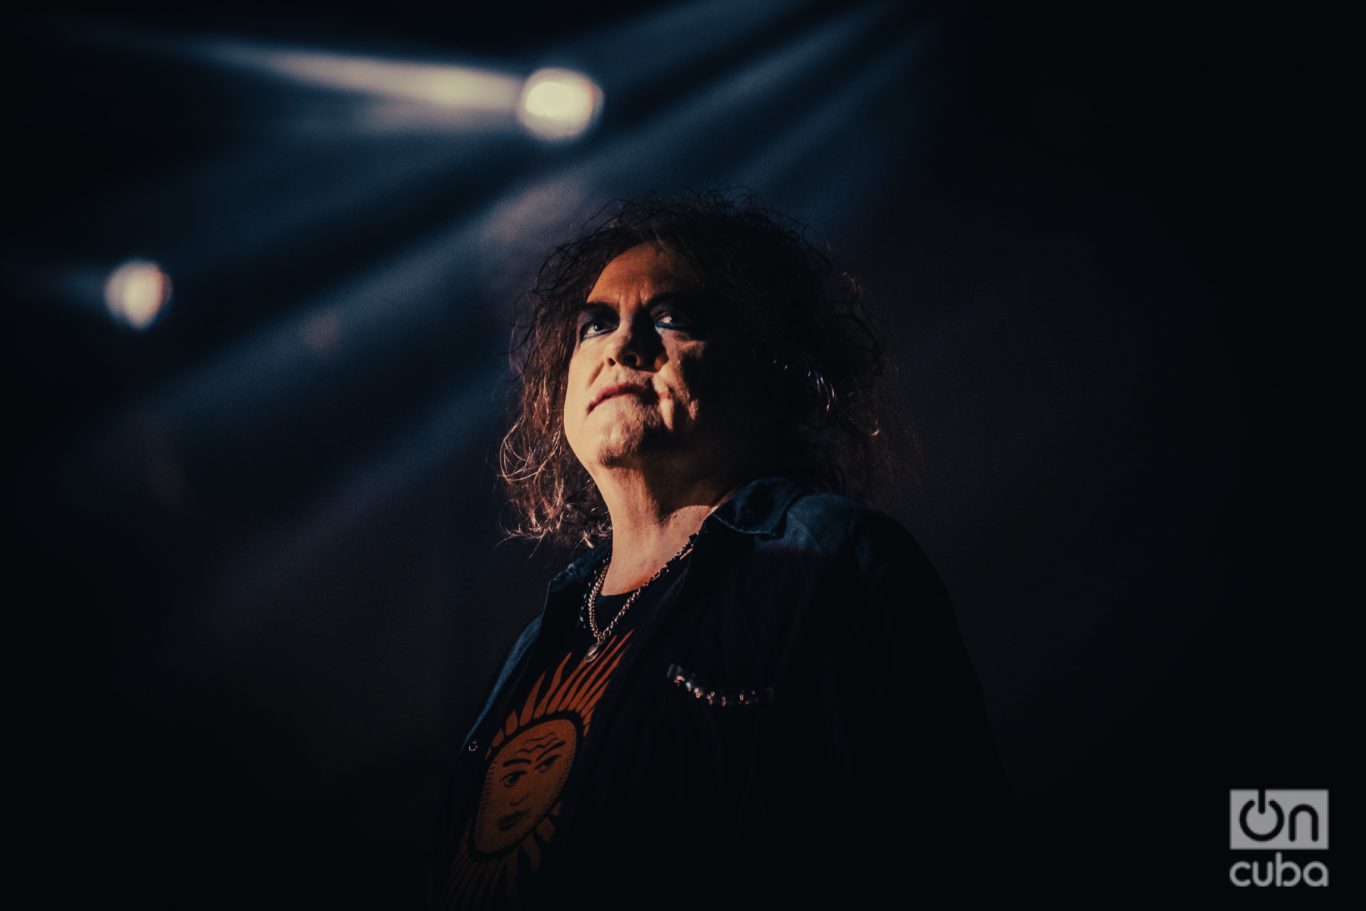 Robert Smith, vocalista y líder de The Cure, con su maquillaje gótico característico. Foto: Kaloian.
